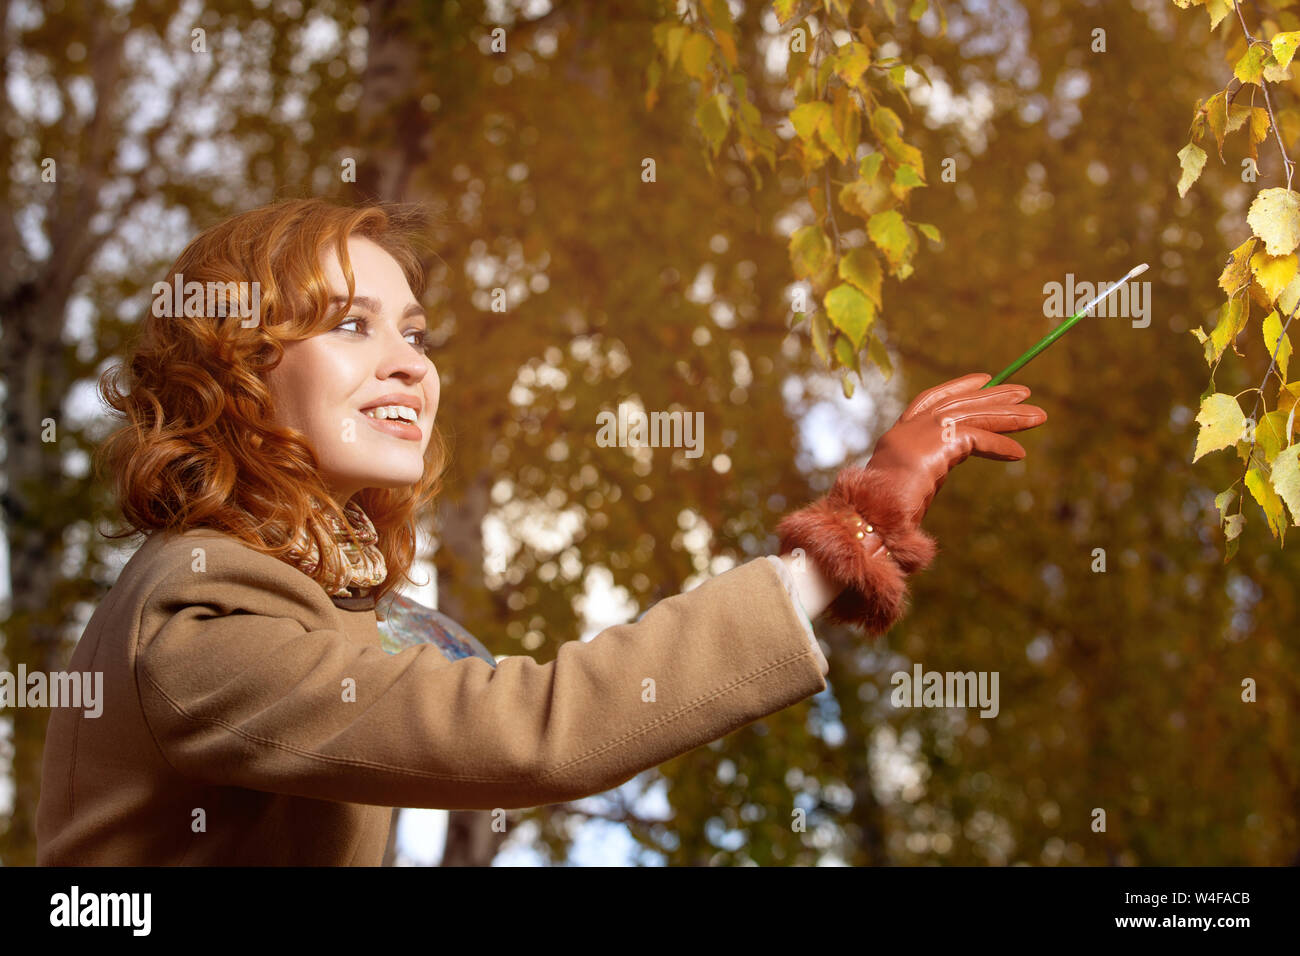 Schöne Frau mit Palette und Pinsel Lacke Farben Blätter an den Bäumen Stockfoto